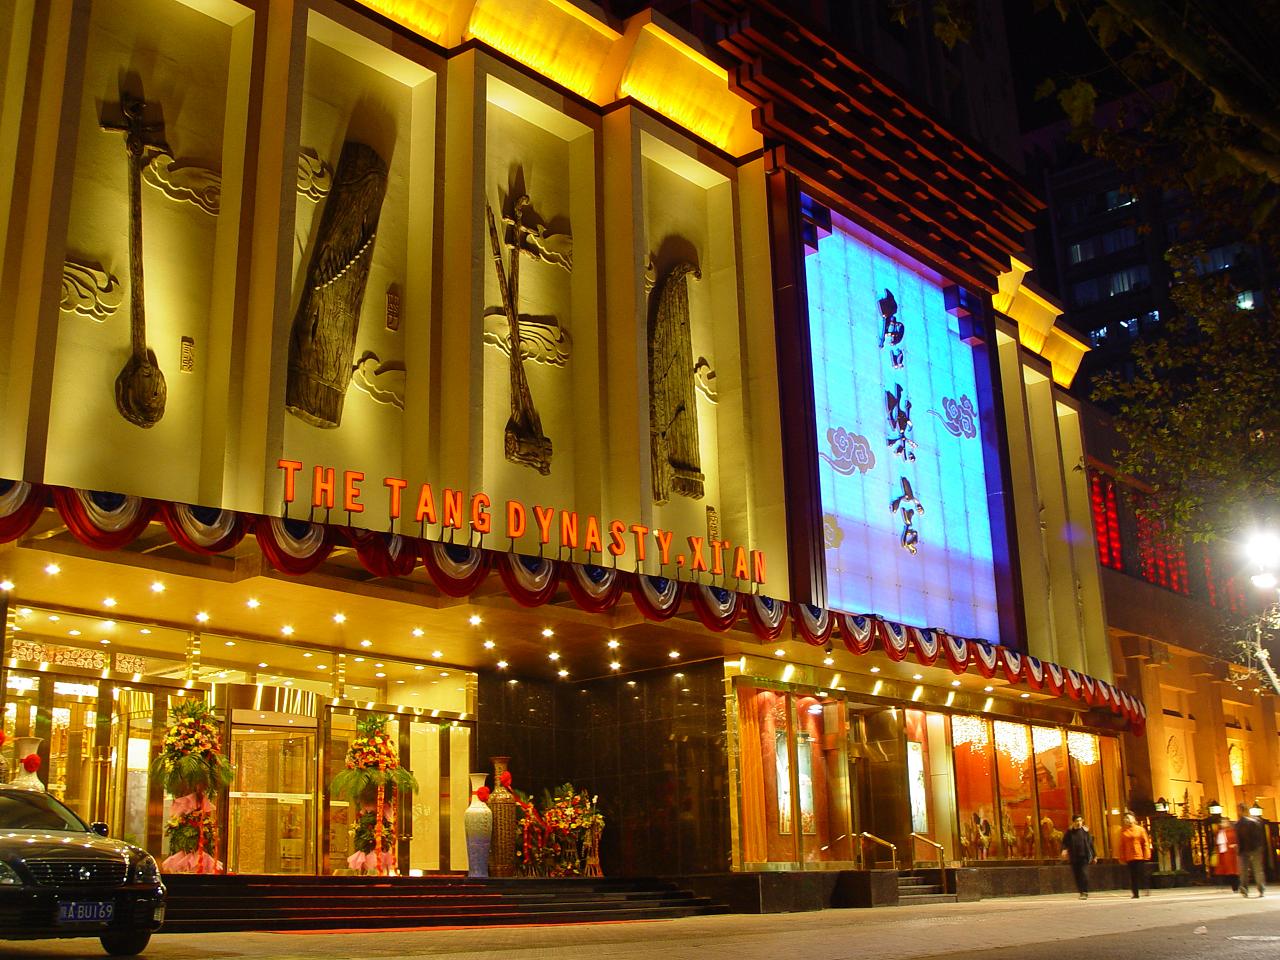 قصر تانغ يوي .. مطعم لمسرح الغناء والرقص